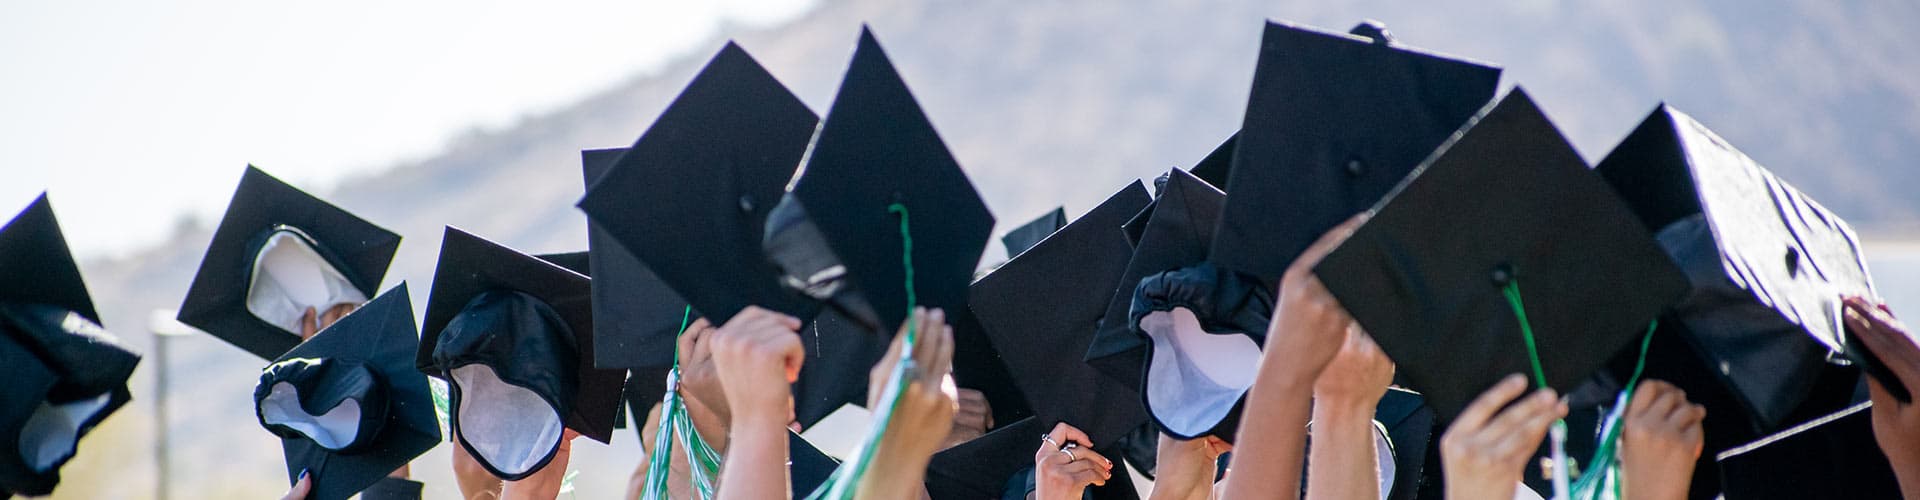 Graduation caps raised in the air